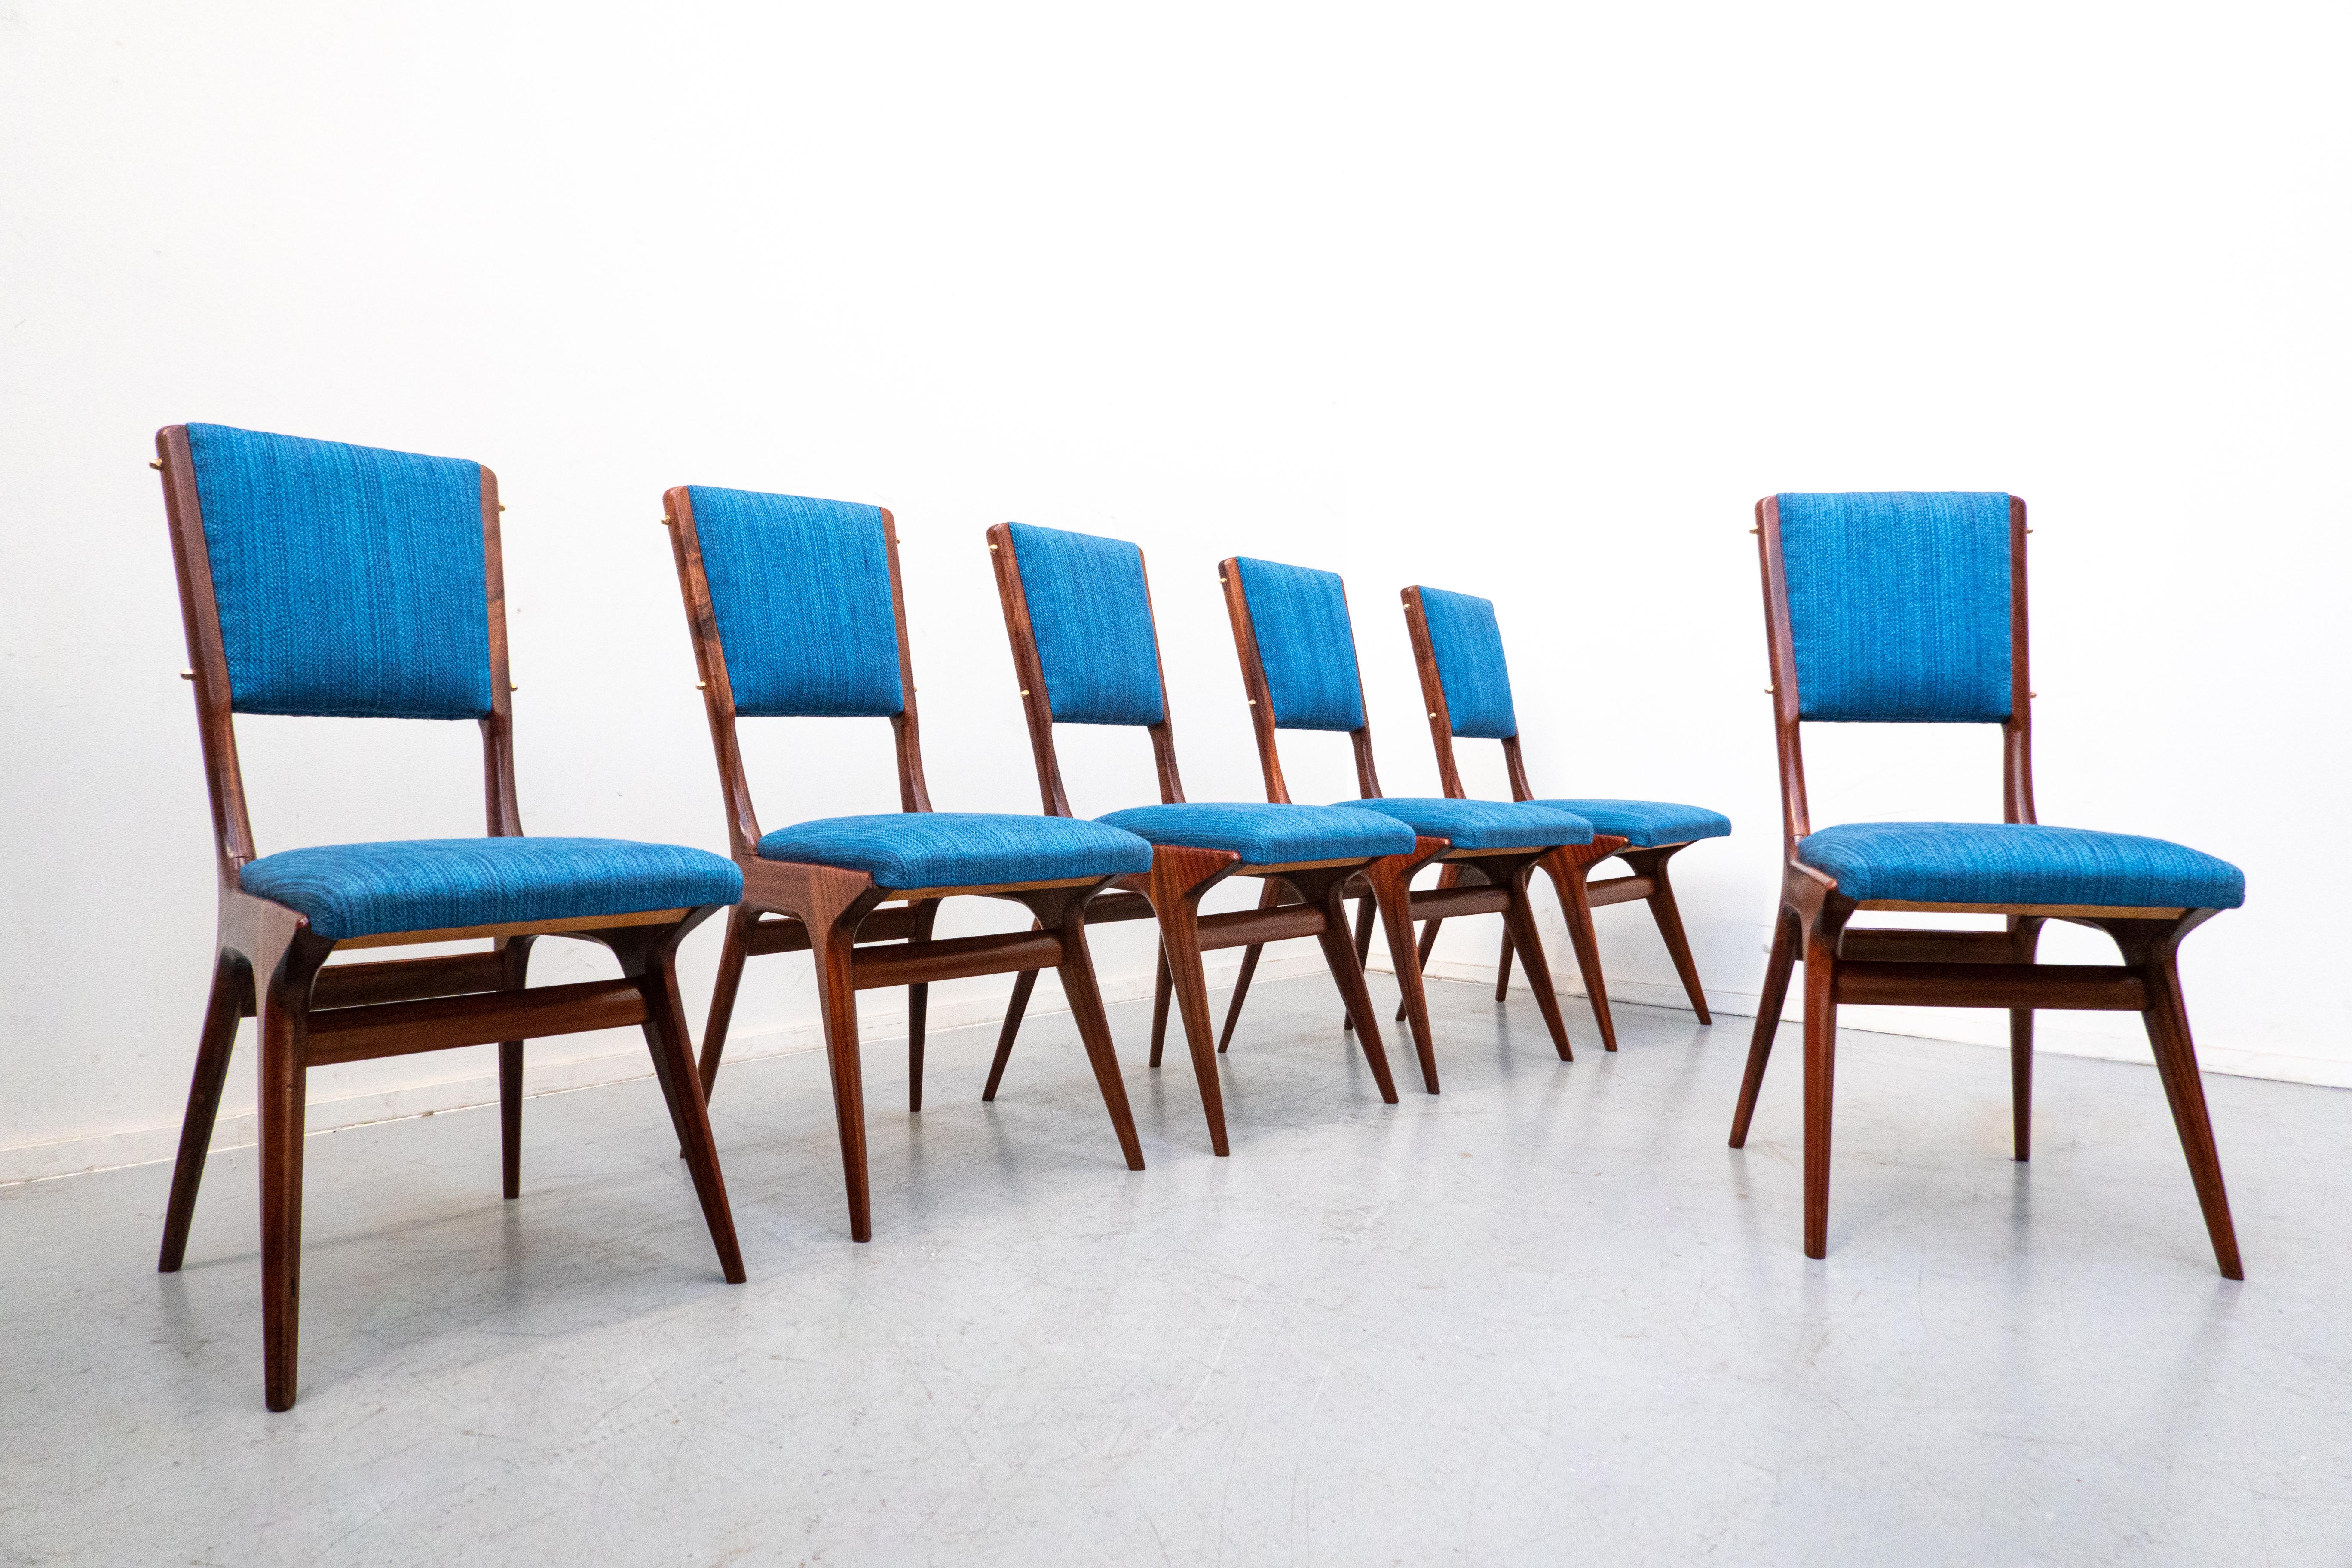 Ensemble de 6 chaises bleues modèle 634 par Carlo de Carli pour Cassina, Italie, années 1950
Acajou et tissu bleu. 
Rembourré.
 